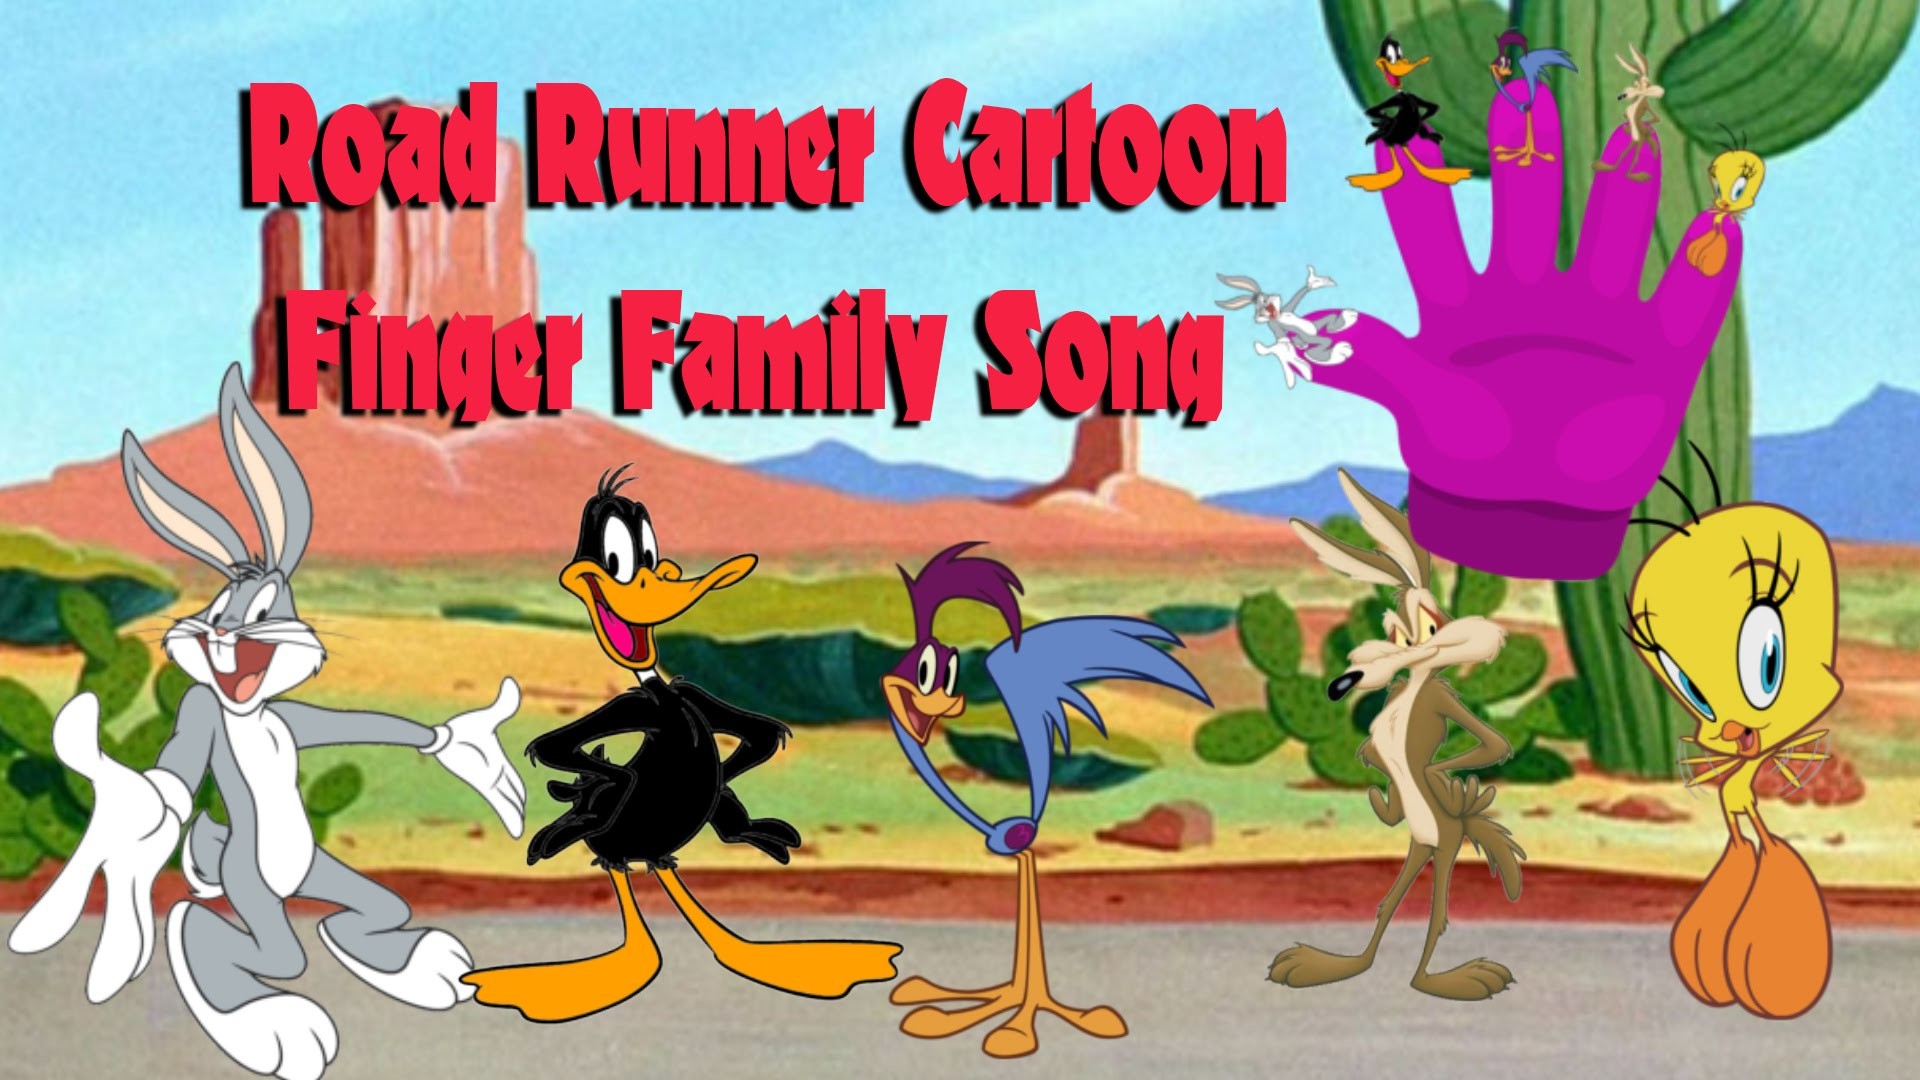 1920x1080 Road Runner Cartoon Finger Family Song | Nursery Rhymes for Children's